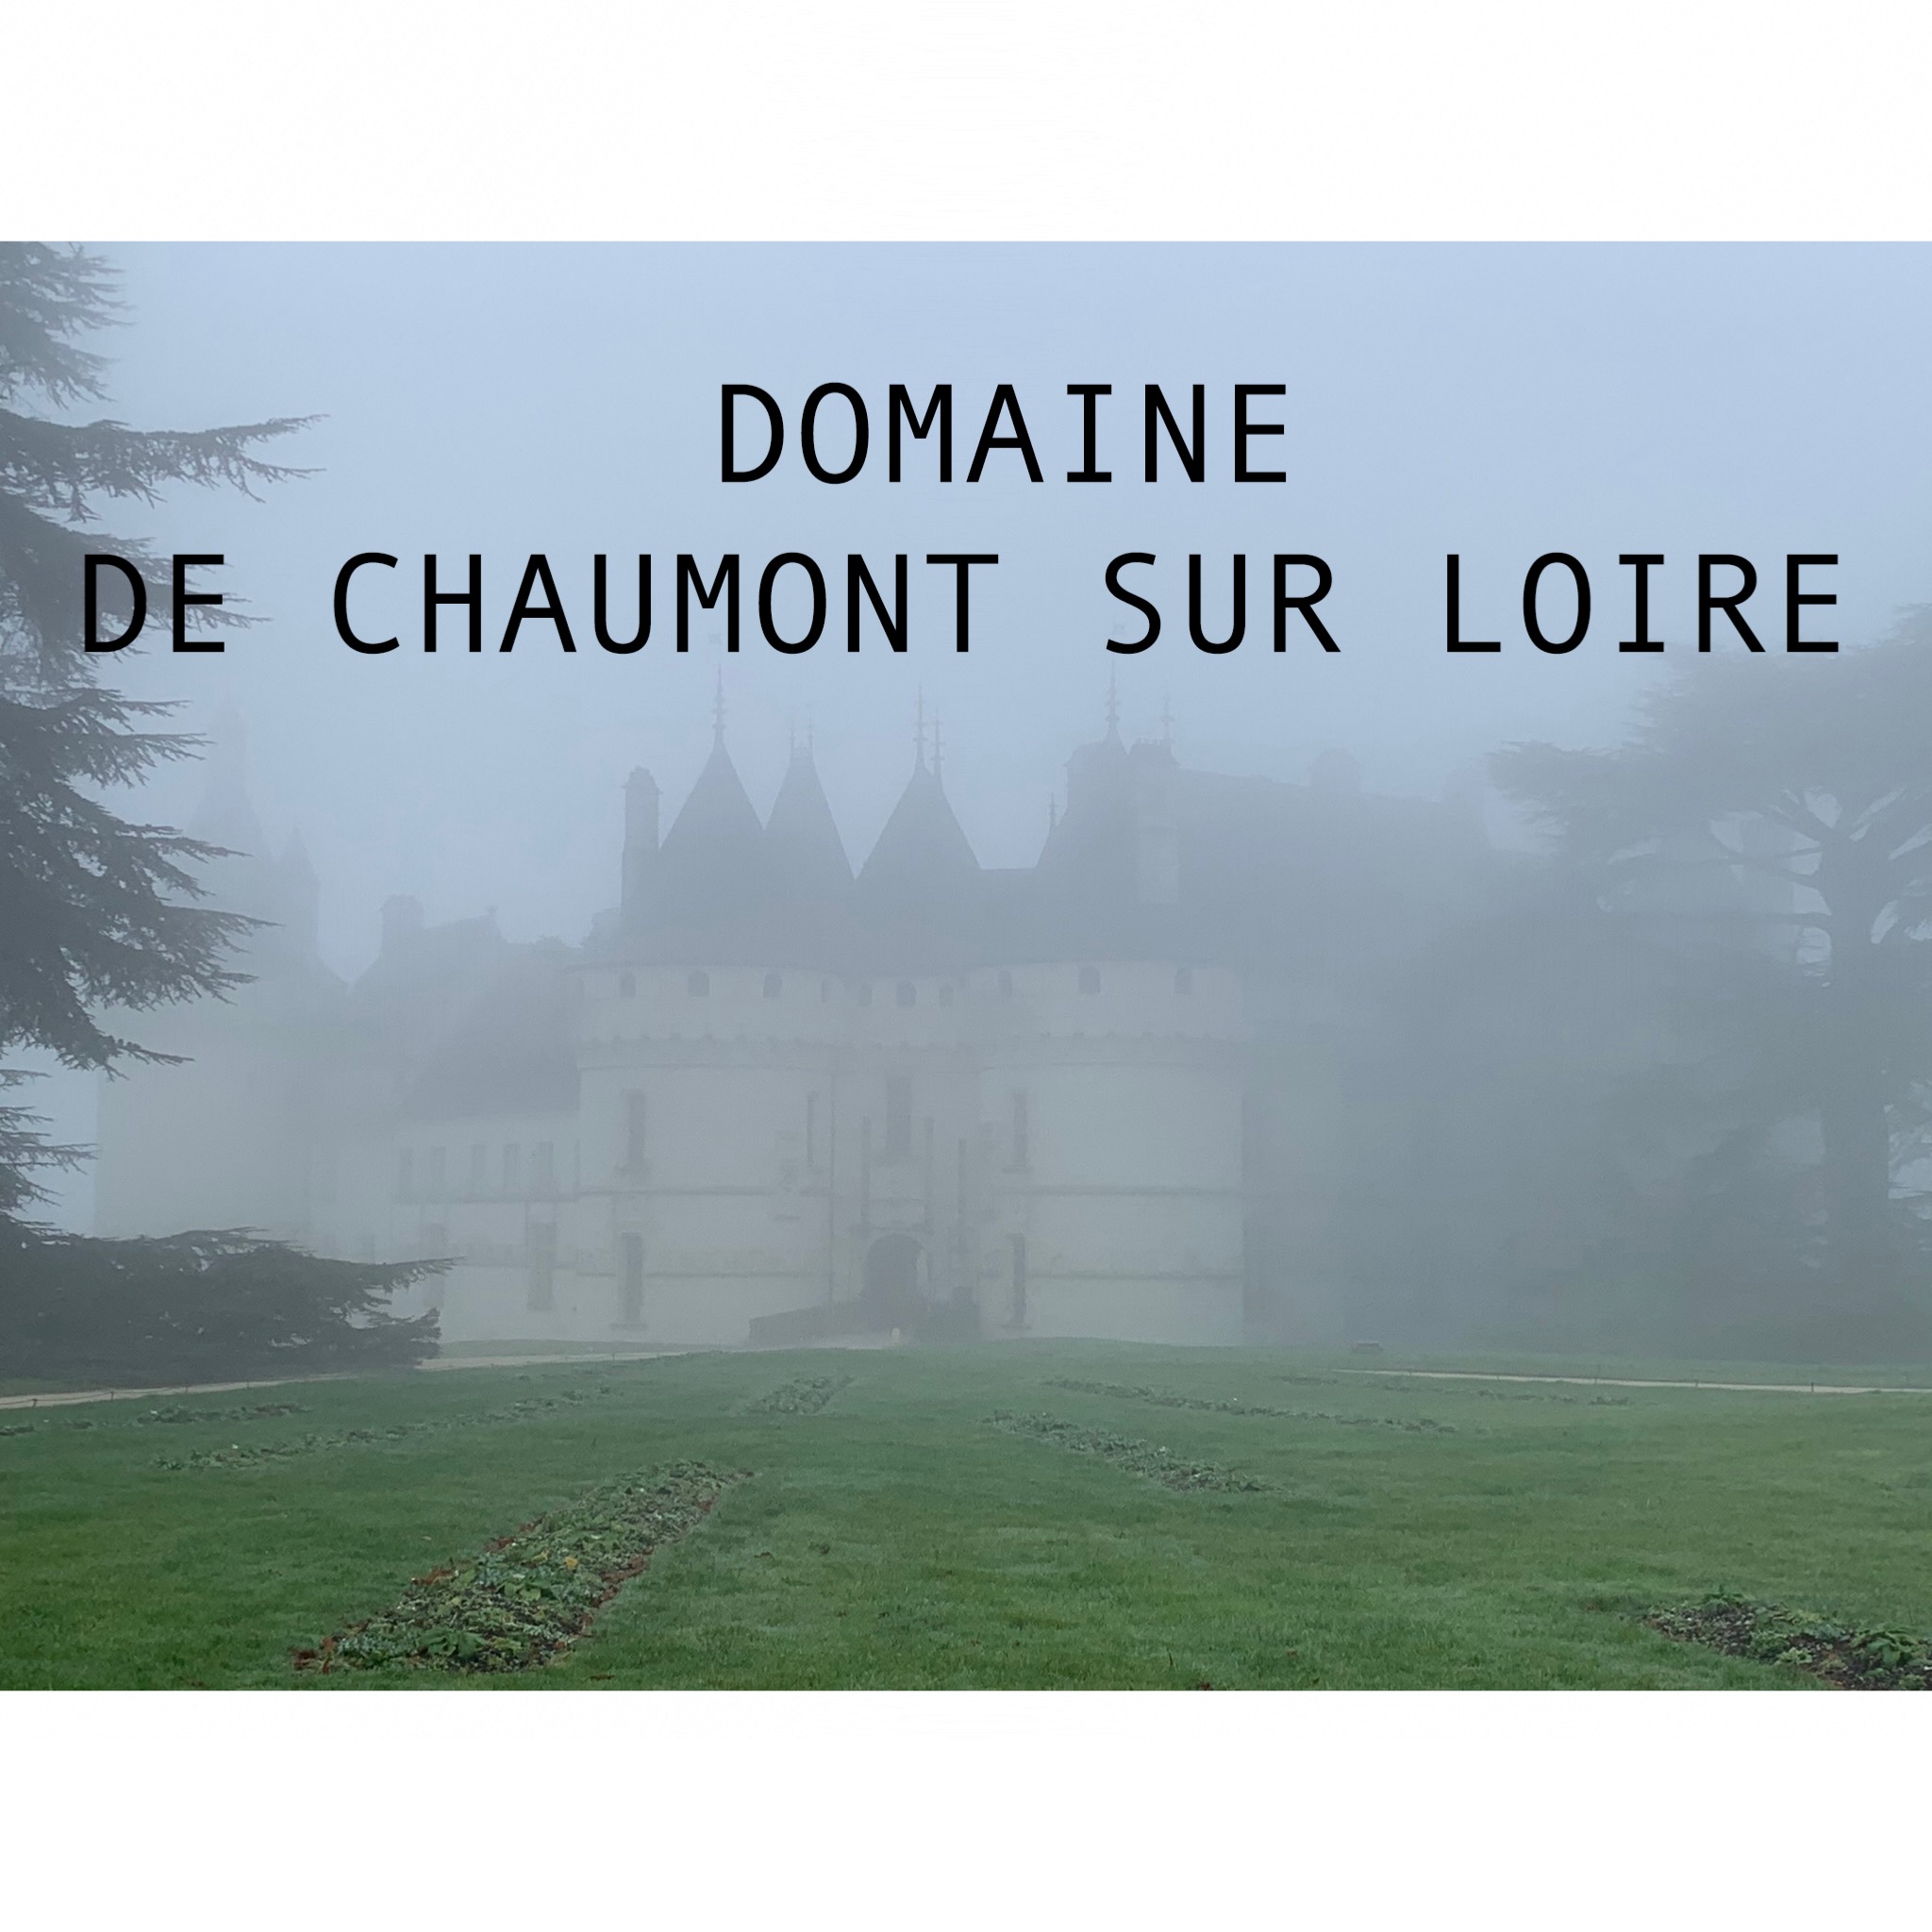 chateau de Chaumont sur Loire dans la brume 